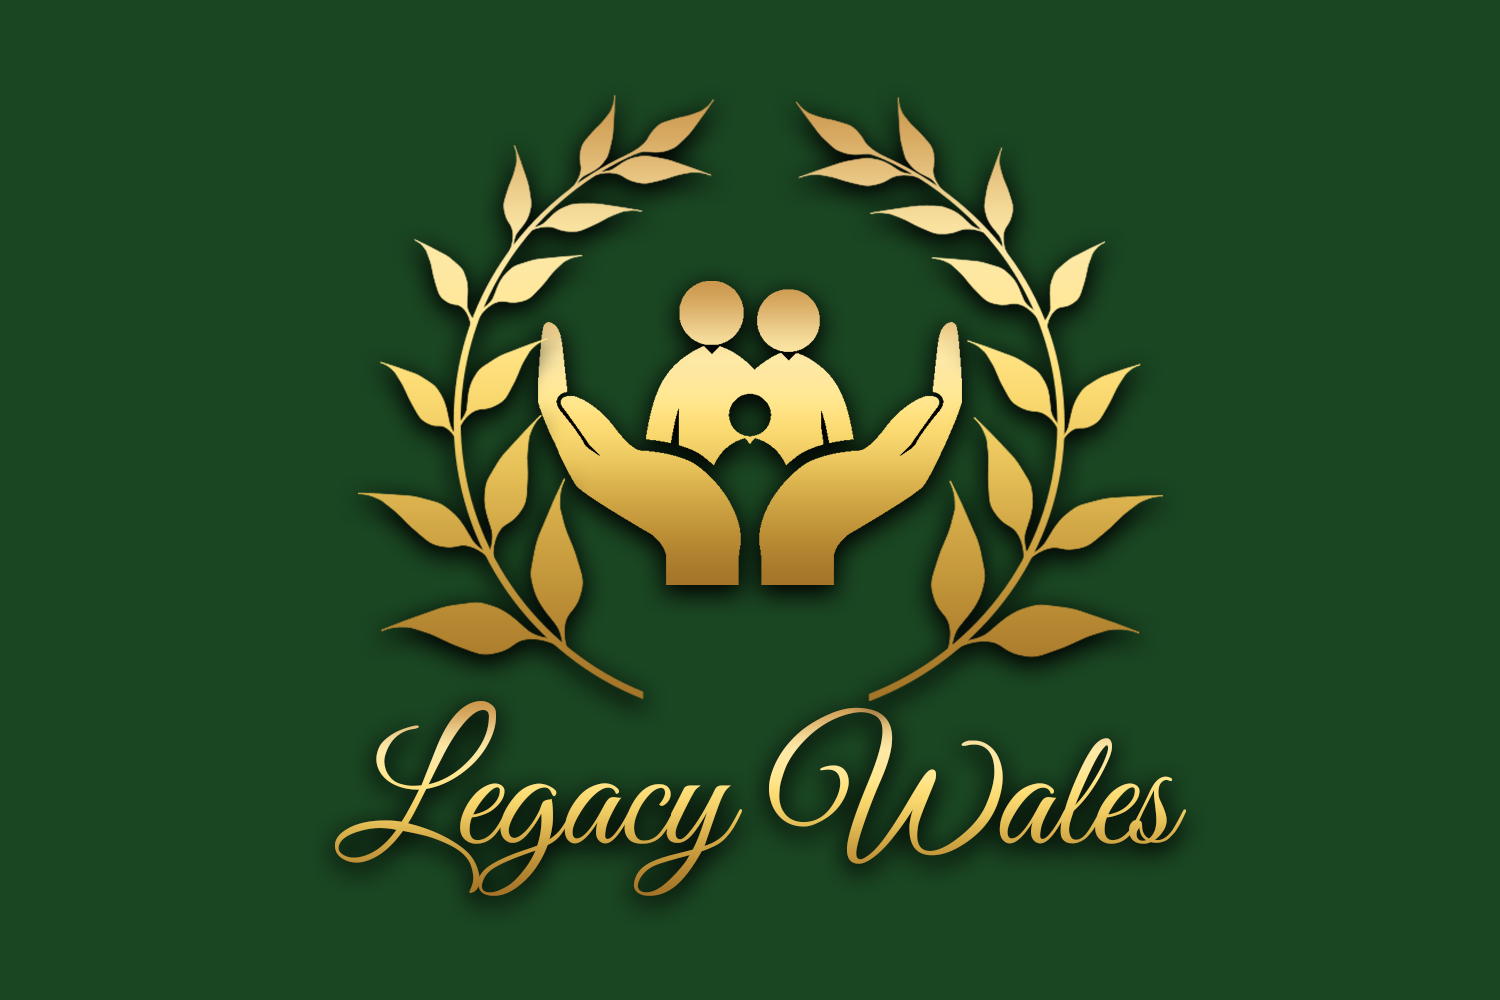 Legacy Wales logo